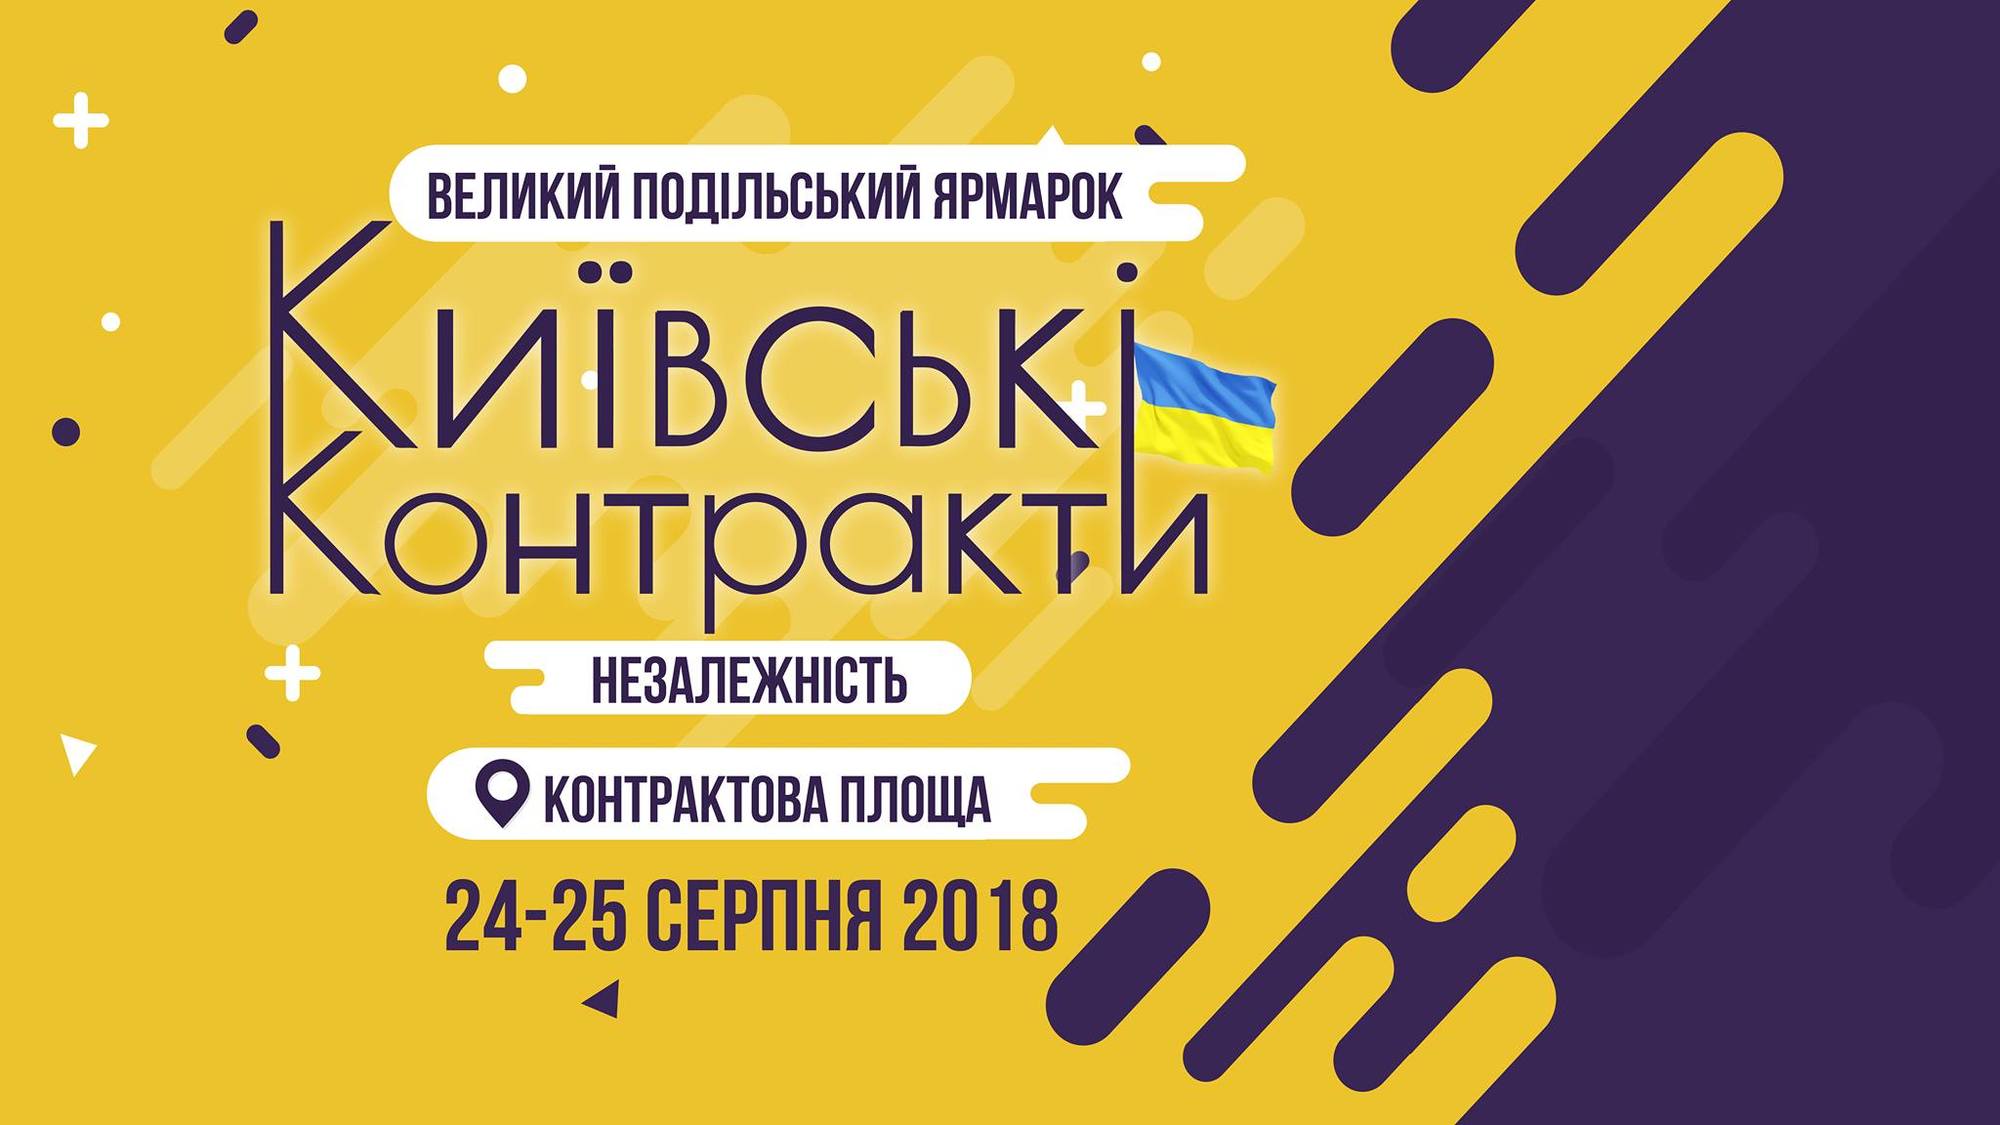 Большая ярмарка украинских производителей пройдет в Киеве ко Дню Независимости